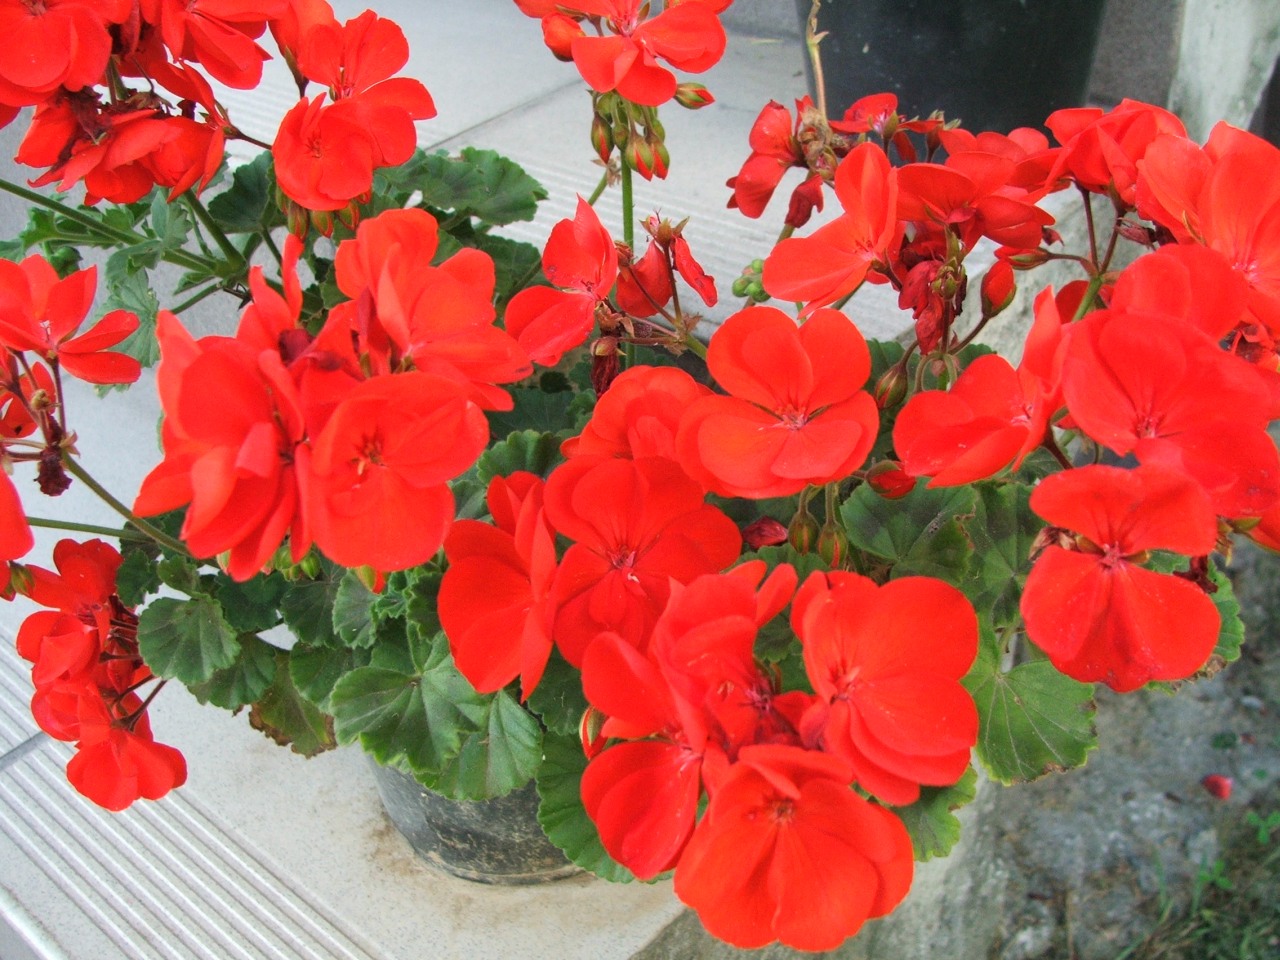 El geranio zonal es una planta de flores rojas, rosas, o blancas